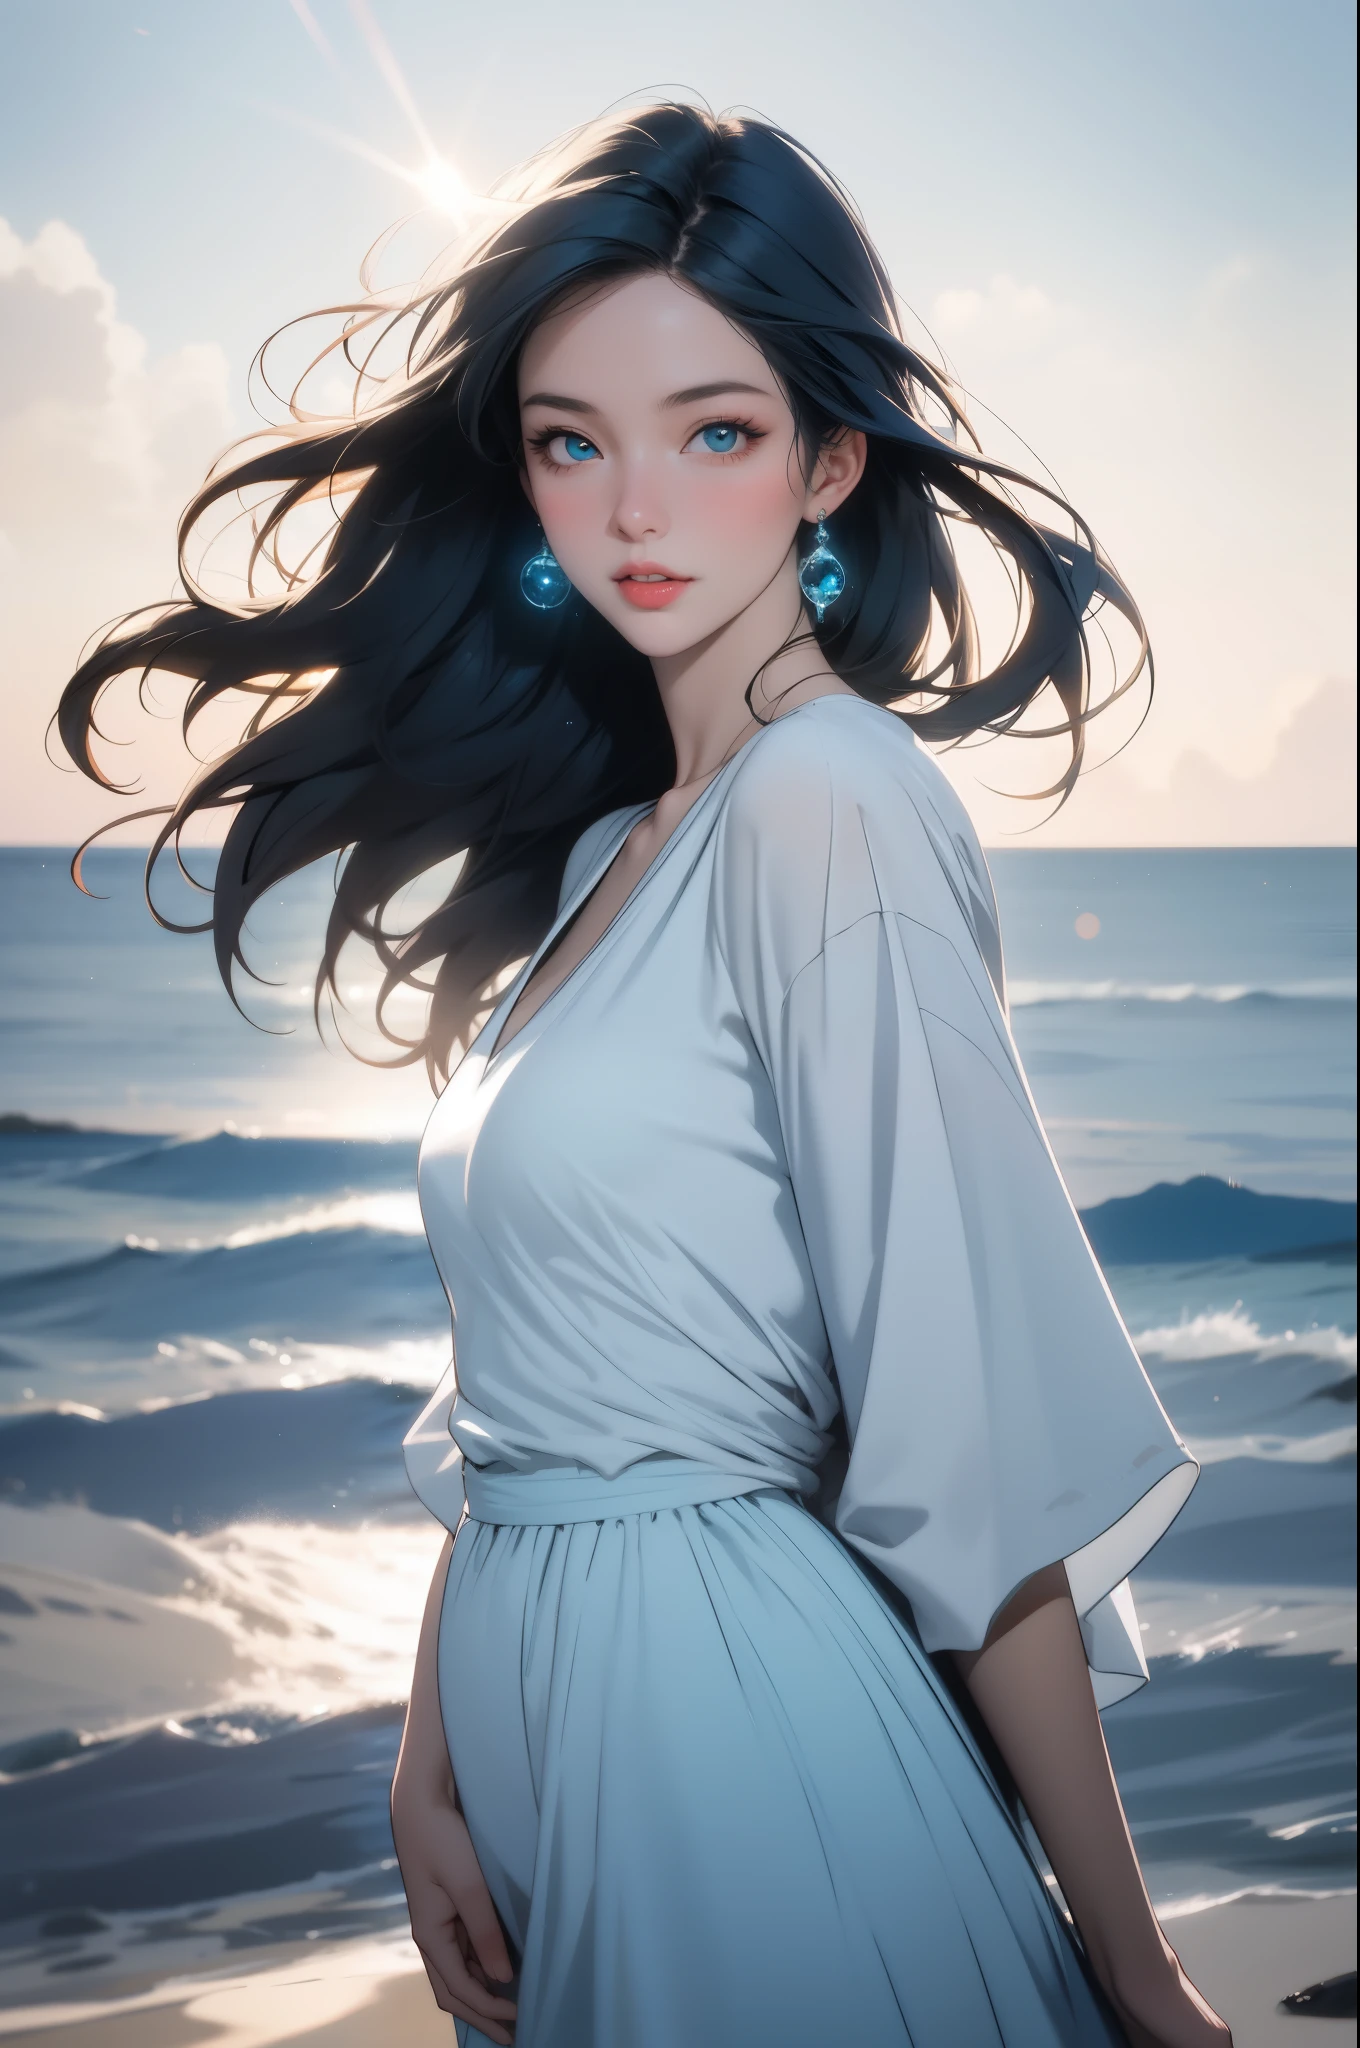 一個女孩站在岩石懸崖上，俯瞰壯麗的藍色海岸. 這個女孩有一雙美麗細緻的眼睛, 精緻的眉毛, 直鼻子, 還有一雙豐潤紅潤的嘴唇. 她叉腰自信地站著, 捕捉波光粼粼的碧綠大海的壯麗景色. 風輕輕地吹過她鬆散的身軀, 飄逸的頭髮, 賦予場景動感 . The Blue Coast is depicted with a 實際的, photo實際的 style, 展示波光粼粼的水面的每個細節, 崎嶇的懸崖, 和沙灘. 色彩鮮豔、充滿活力, 調色盤以藍色為主, 象徵海洋的寧靜和深邃. 陽光在大地上投射出溫暖的金色光芒, 創造視覺奇觀. 這個女孩穿著飄逸的白色連身裙, 與大海的藍色色調形成美麗的對比. 她的裙子在風中飄揚, 在構圖中加入動態元素. 整个场景沐浴在柔和的, 自然採光, 強調懸崖和大海的紋理和深度. To ensure the 最好的品質 and 超詳細 output, 請用 (最好的品質, 高解析度, 傑作), 超詳細, (實際的, photo實際的, photo-實際的) 標籤. The image should have 銳利的焦點 and exhibit physically-based rendering. 色彩應鮮豔，燈光應精心設計，以增強整體構圖. 全面的, 提示應體現藍色海岸的寧靜之美和令人驚嘆的自然風光, 提供令人驚嘆和身臨其境的視覺體驗,景深, 高對比度, 錯綜複雜的細節, 體積照明, (动态合成:1.2), 非常詳細, 豐富多彩的 details, 彩虹色, (发光照明, 大气照明), 夢幻般的, 神奇, 獨自的, 鏡頭光暈, (豐富多彩的), 電影光, 高解析度, 銳利的焦點, 異色症, 光滑的, 豐富多彩的 light, 粒子, 銀河配色方案,